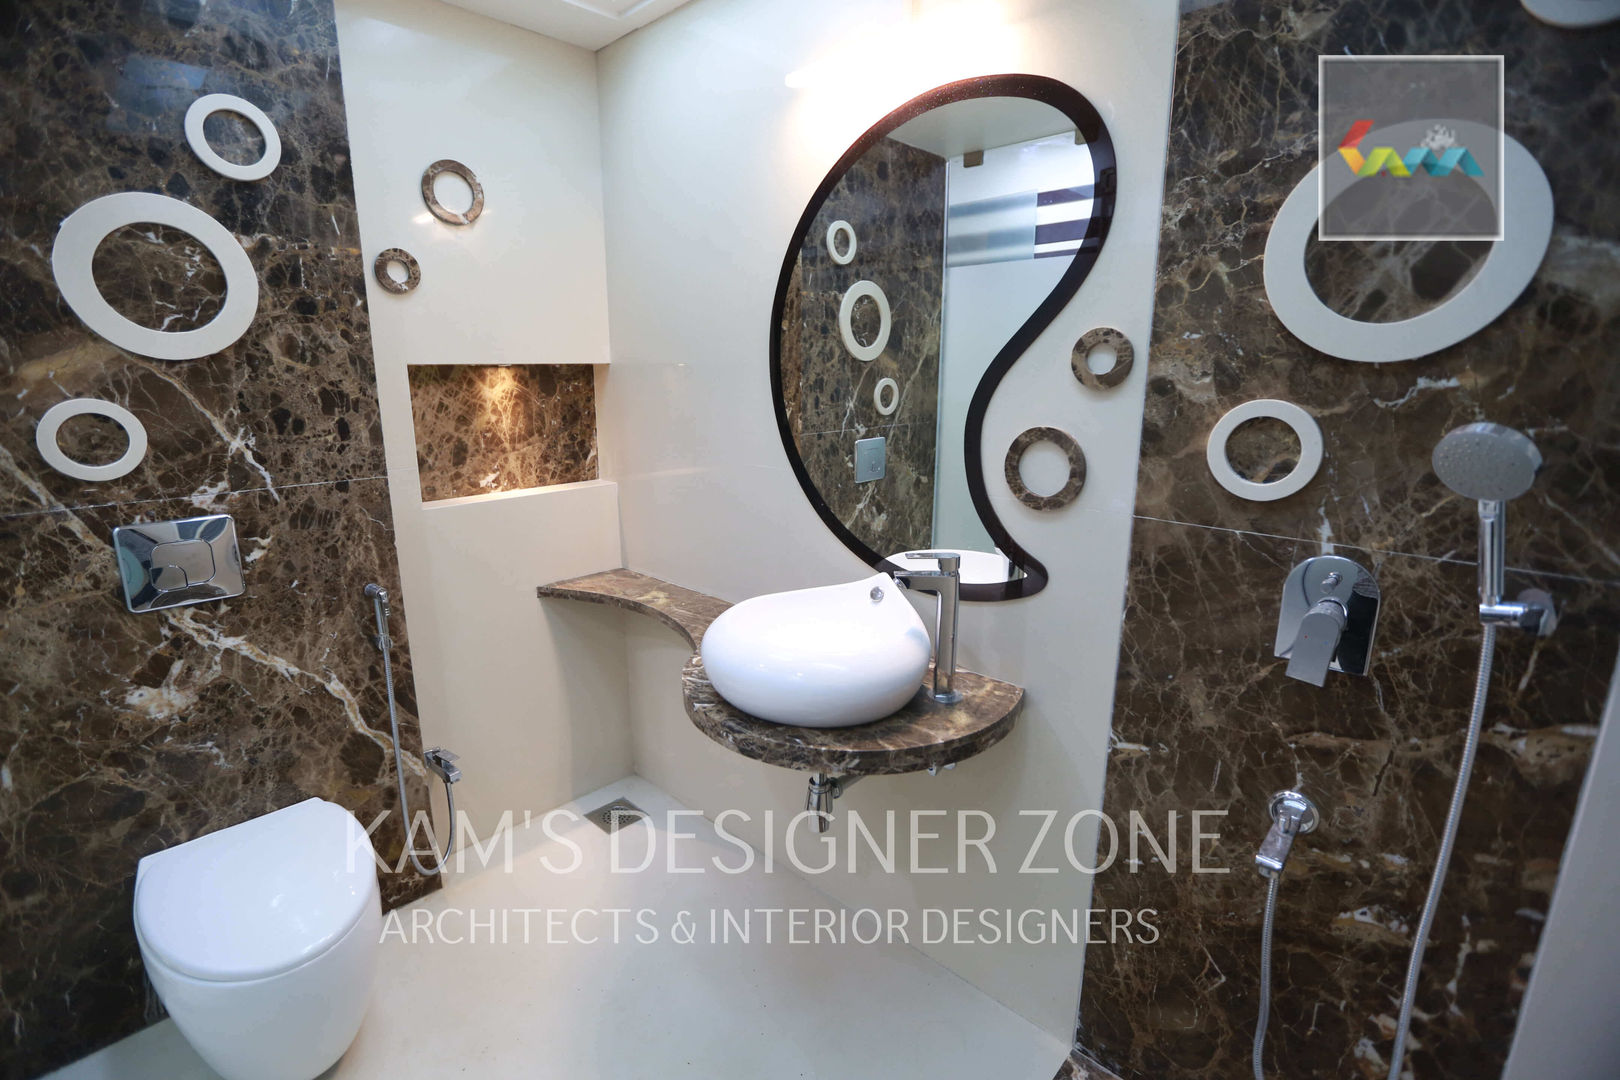 Bathroom Interior Design KAMS DESIGNER ZONE Bathroom